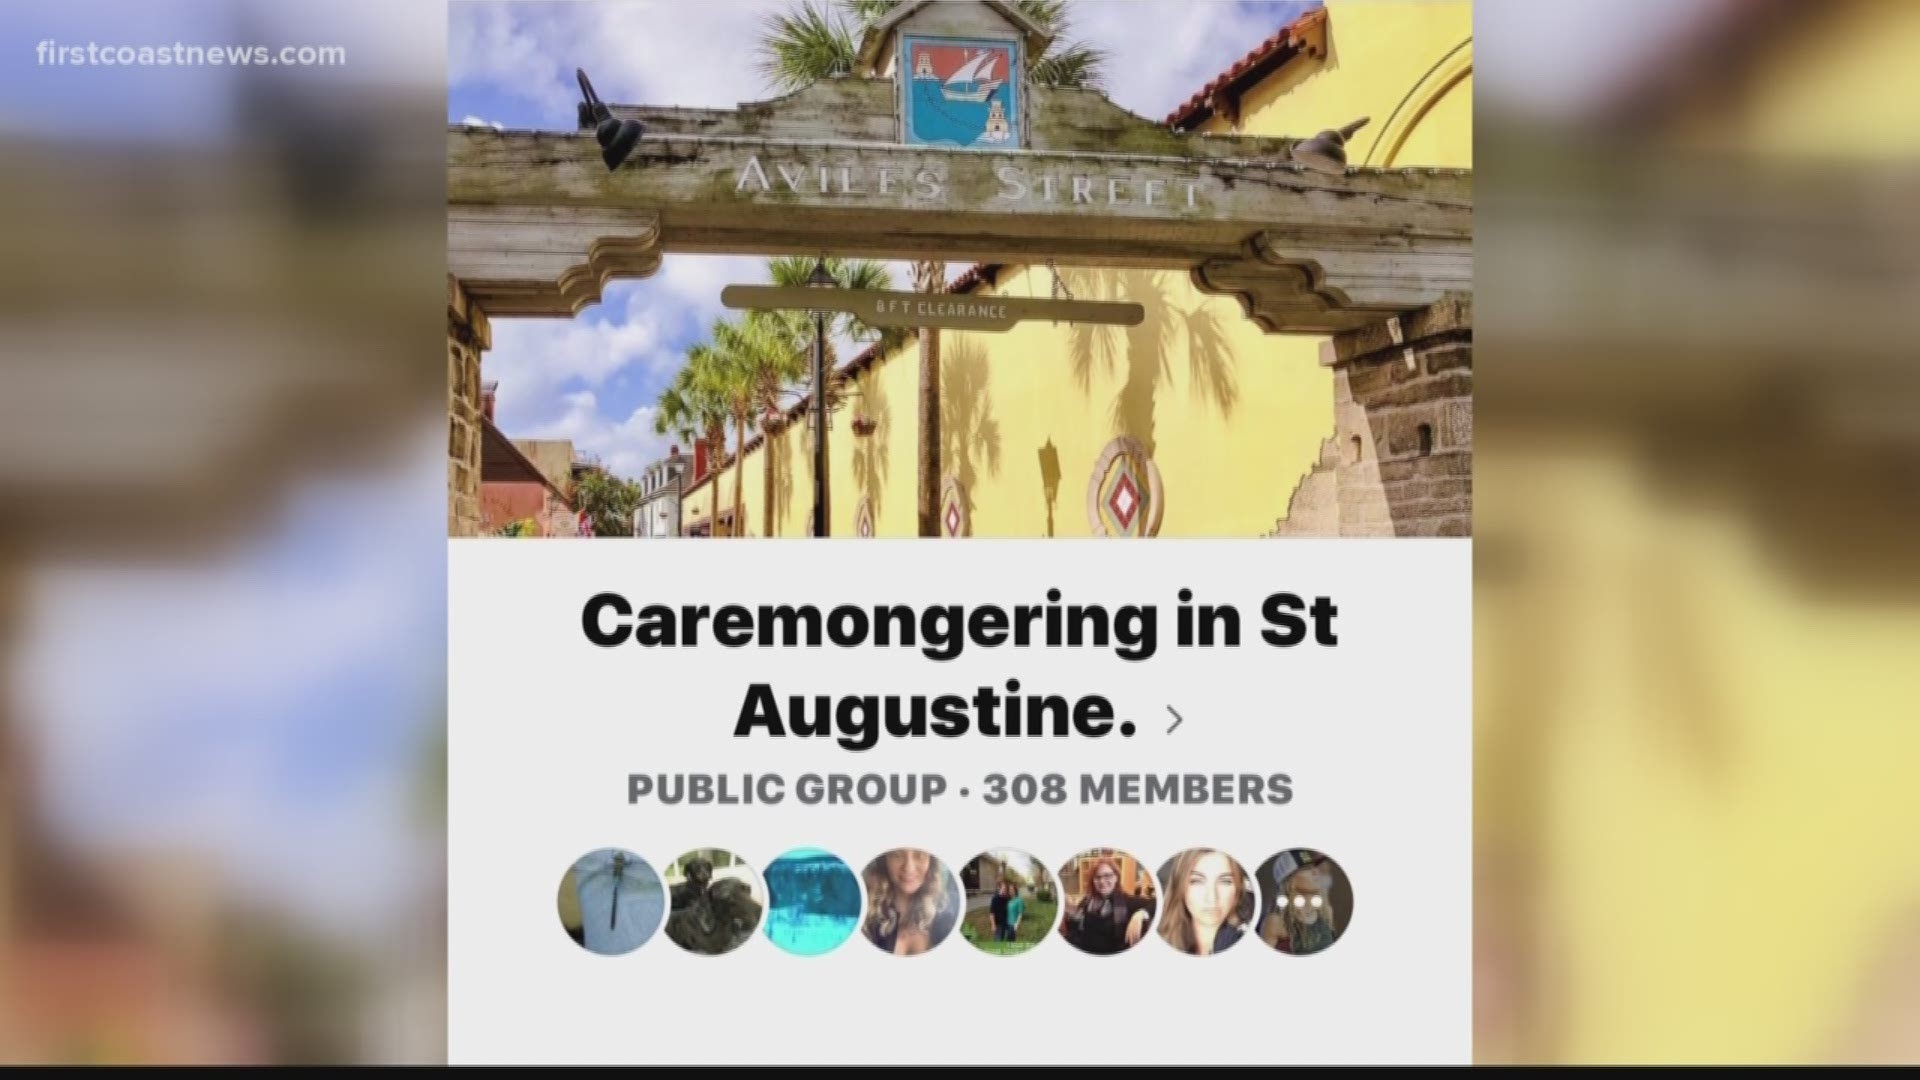 A St. Augustine nurse is helping people via Facebook.